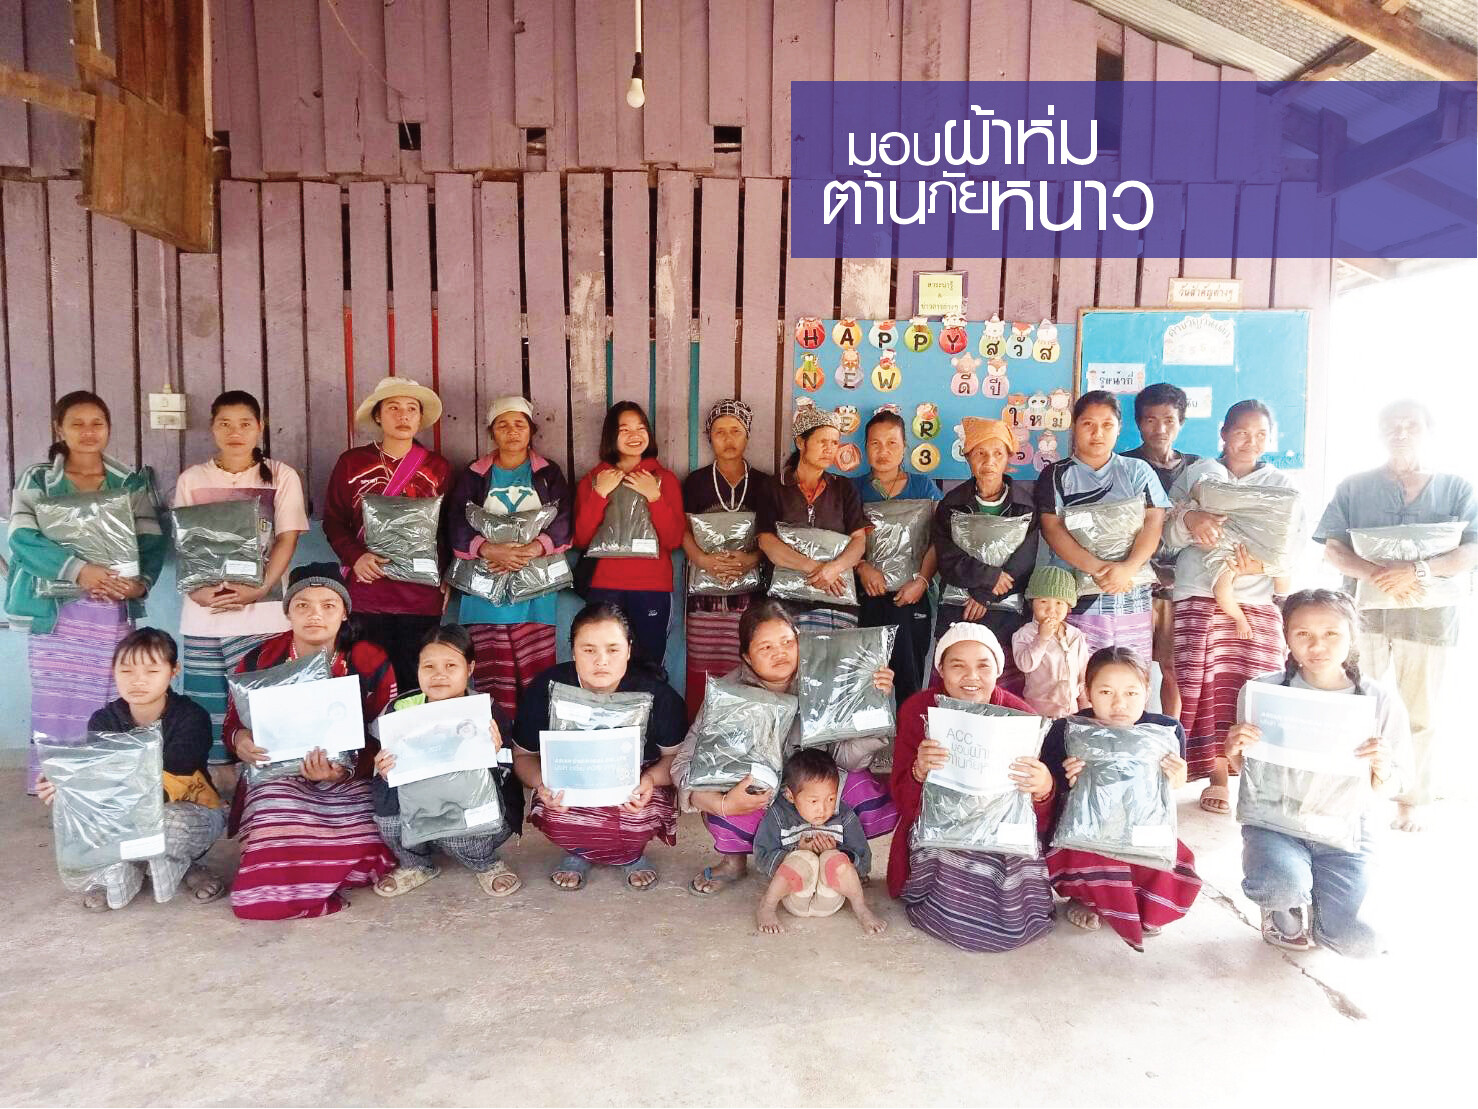 เอเชี่ยน เคมิคัล จับมือ มูลนิธิรักษ์ไทย มอบผ้าห่มช่วยเหลือผู้ประสบภัยหนาว